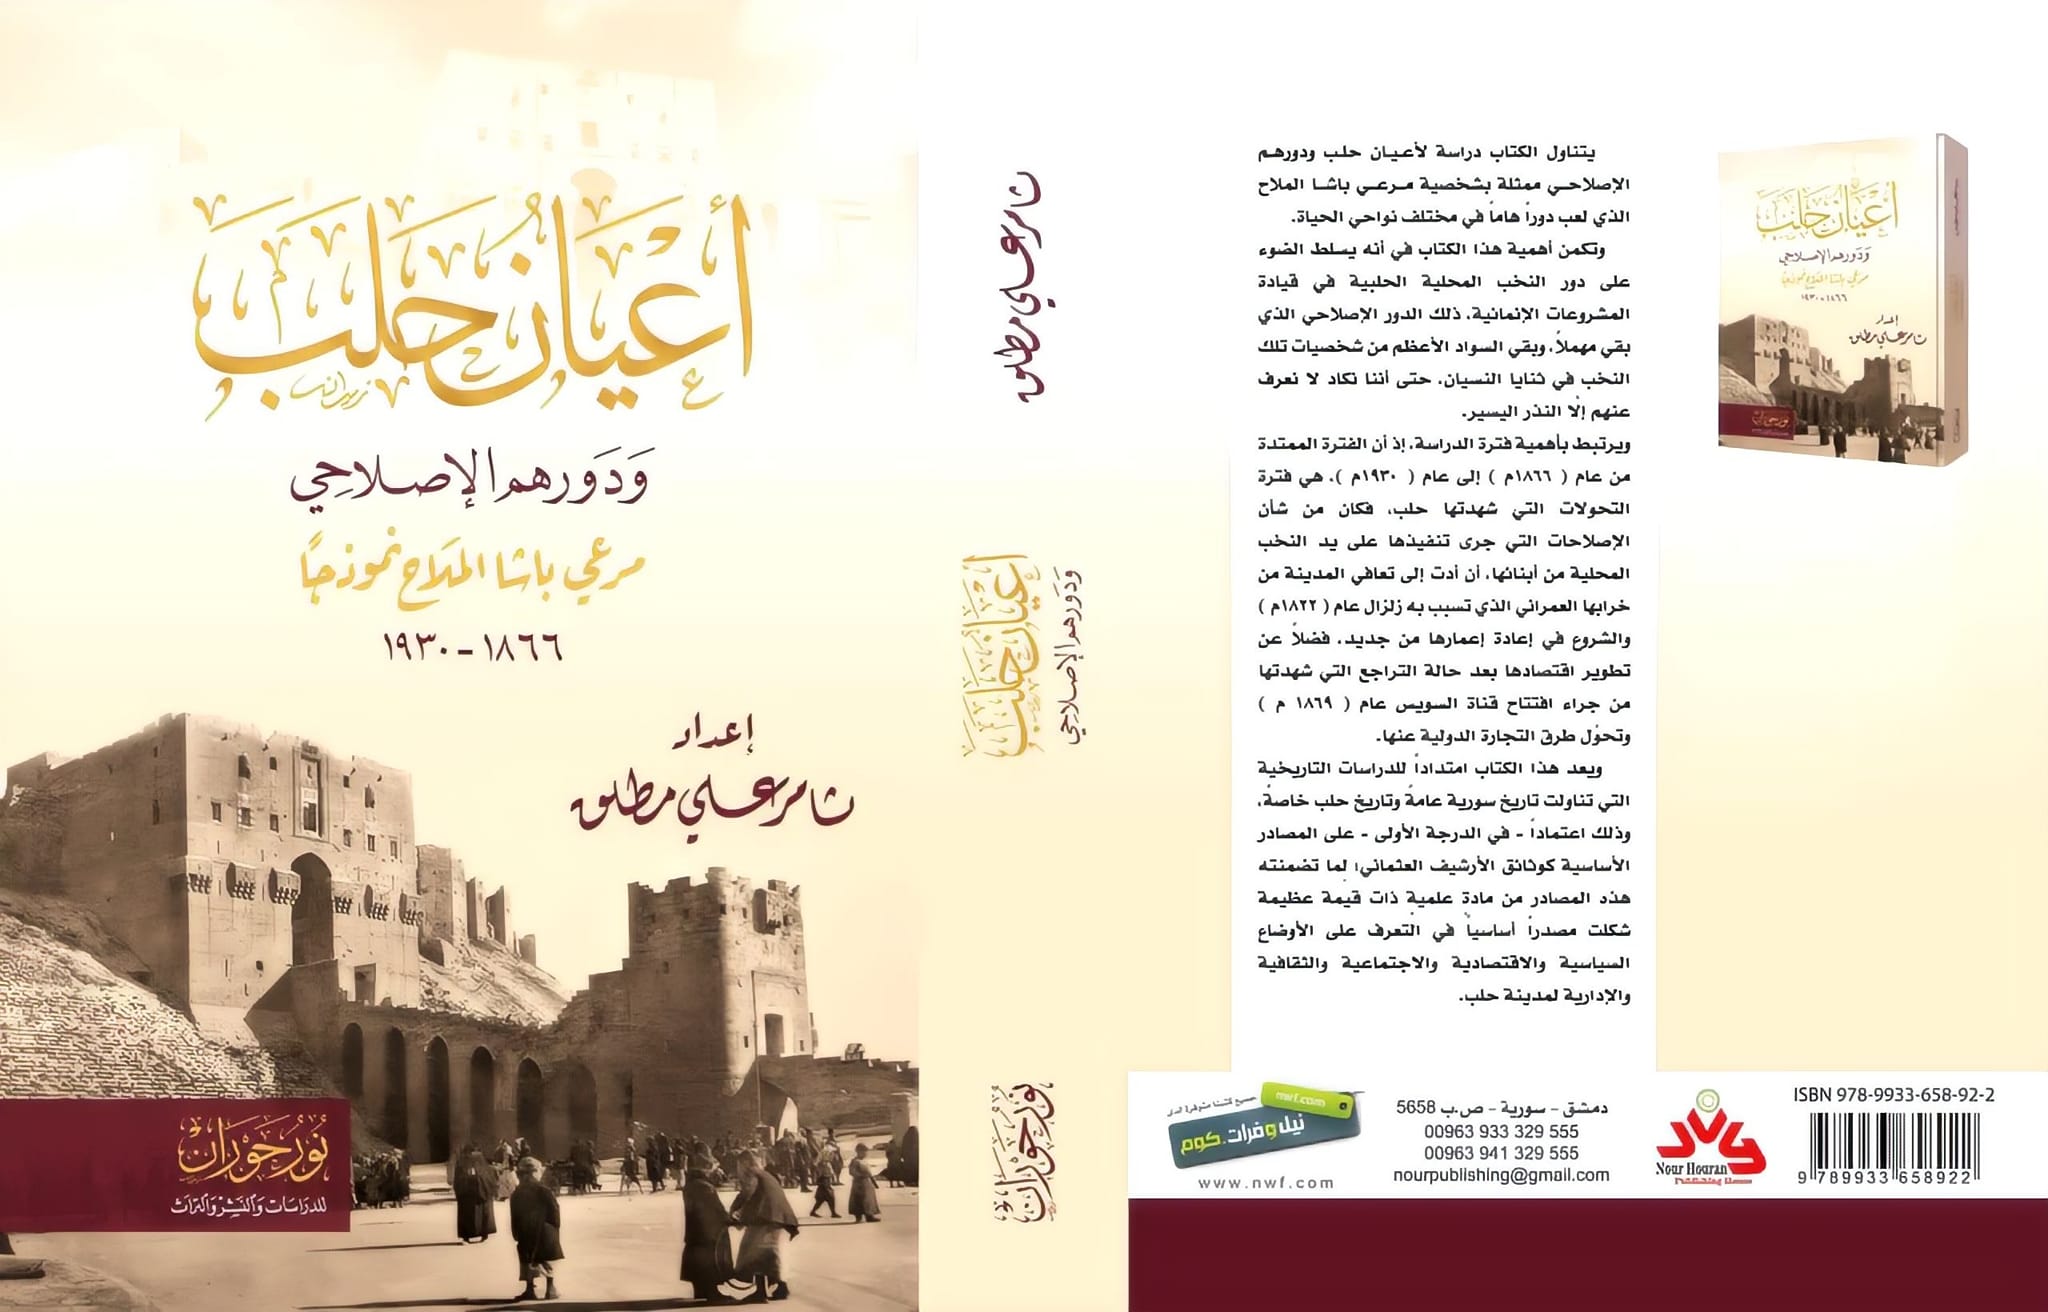 التاريخ السوري المعاصر - مطلق (ثامر علي)، أعيان حلب ودورهم الإصلاحي: مرعي باشا الملّاح نموذجاً (1866-1930)